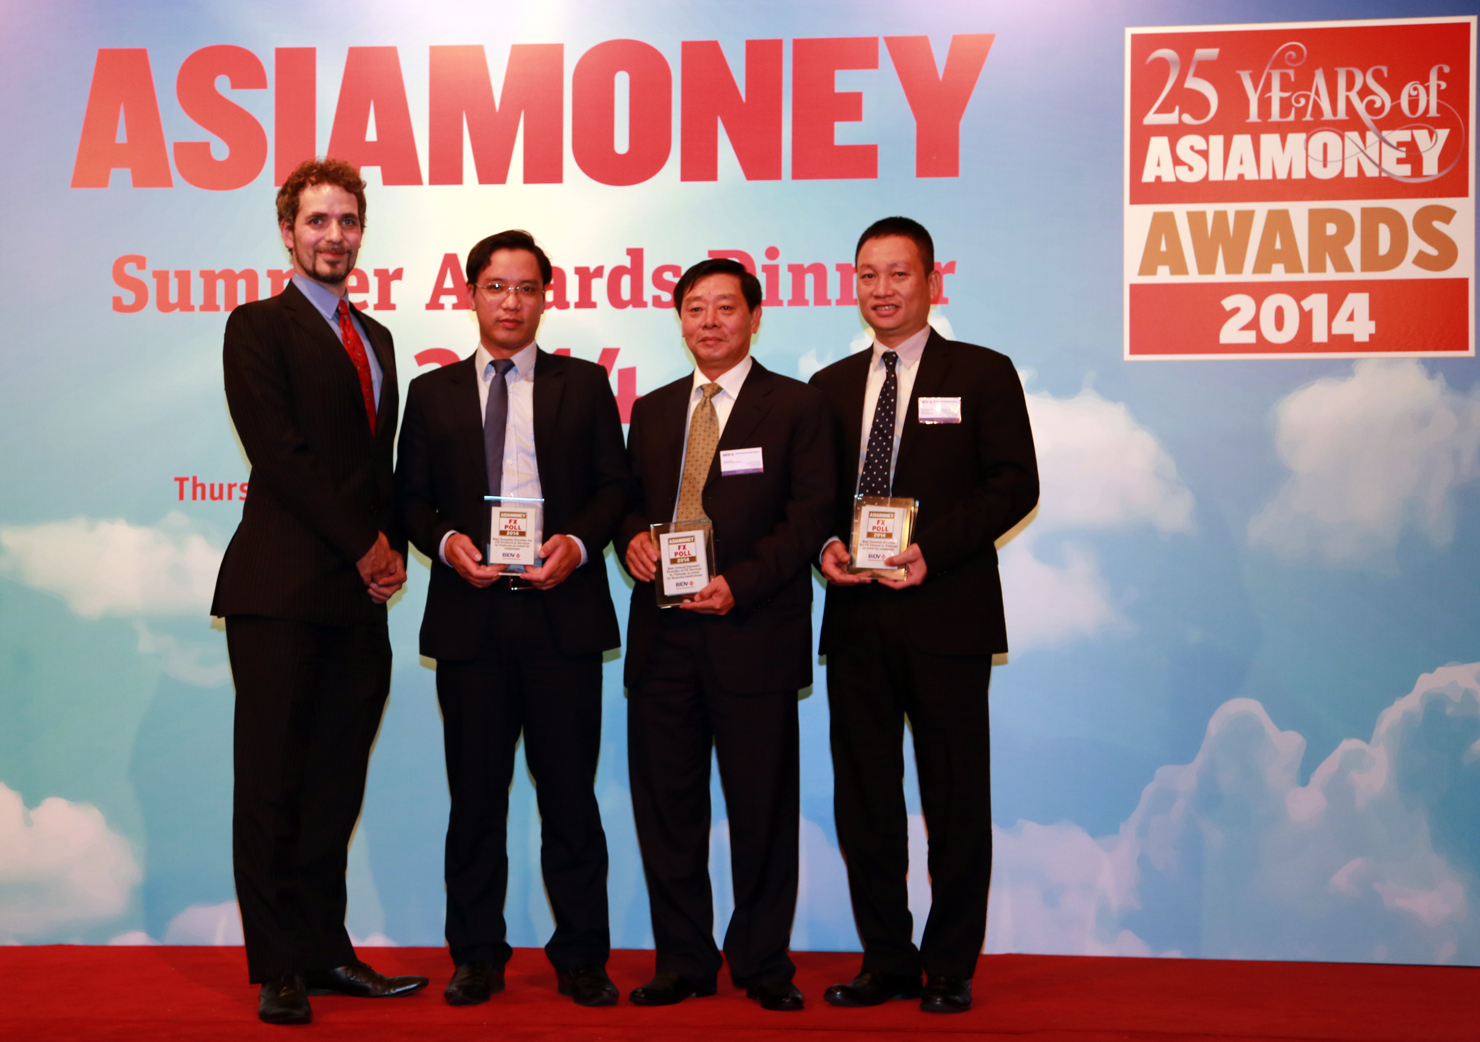 BIDV lần thứ 5 nhận giải thưởng quốc tế danh tiếng “Ngân hàng cung cấp sản phẩm, dịch vụ ngoại hối tốt nhất Việt Nam” do Tạp chí Asiamoney trao tặng. Nguồn: internet